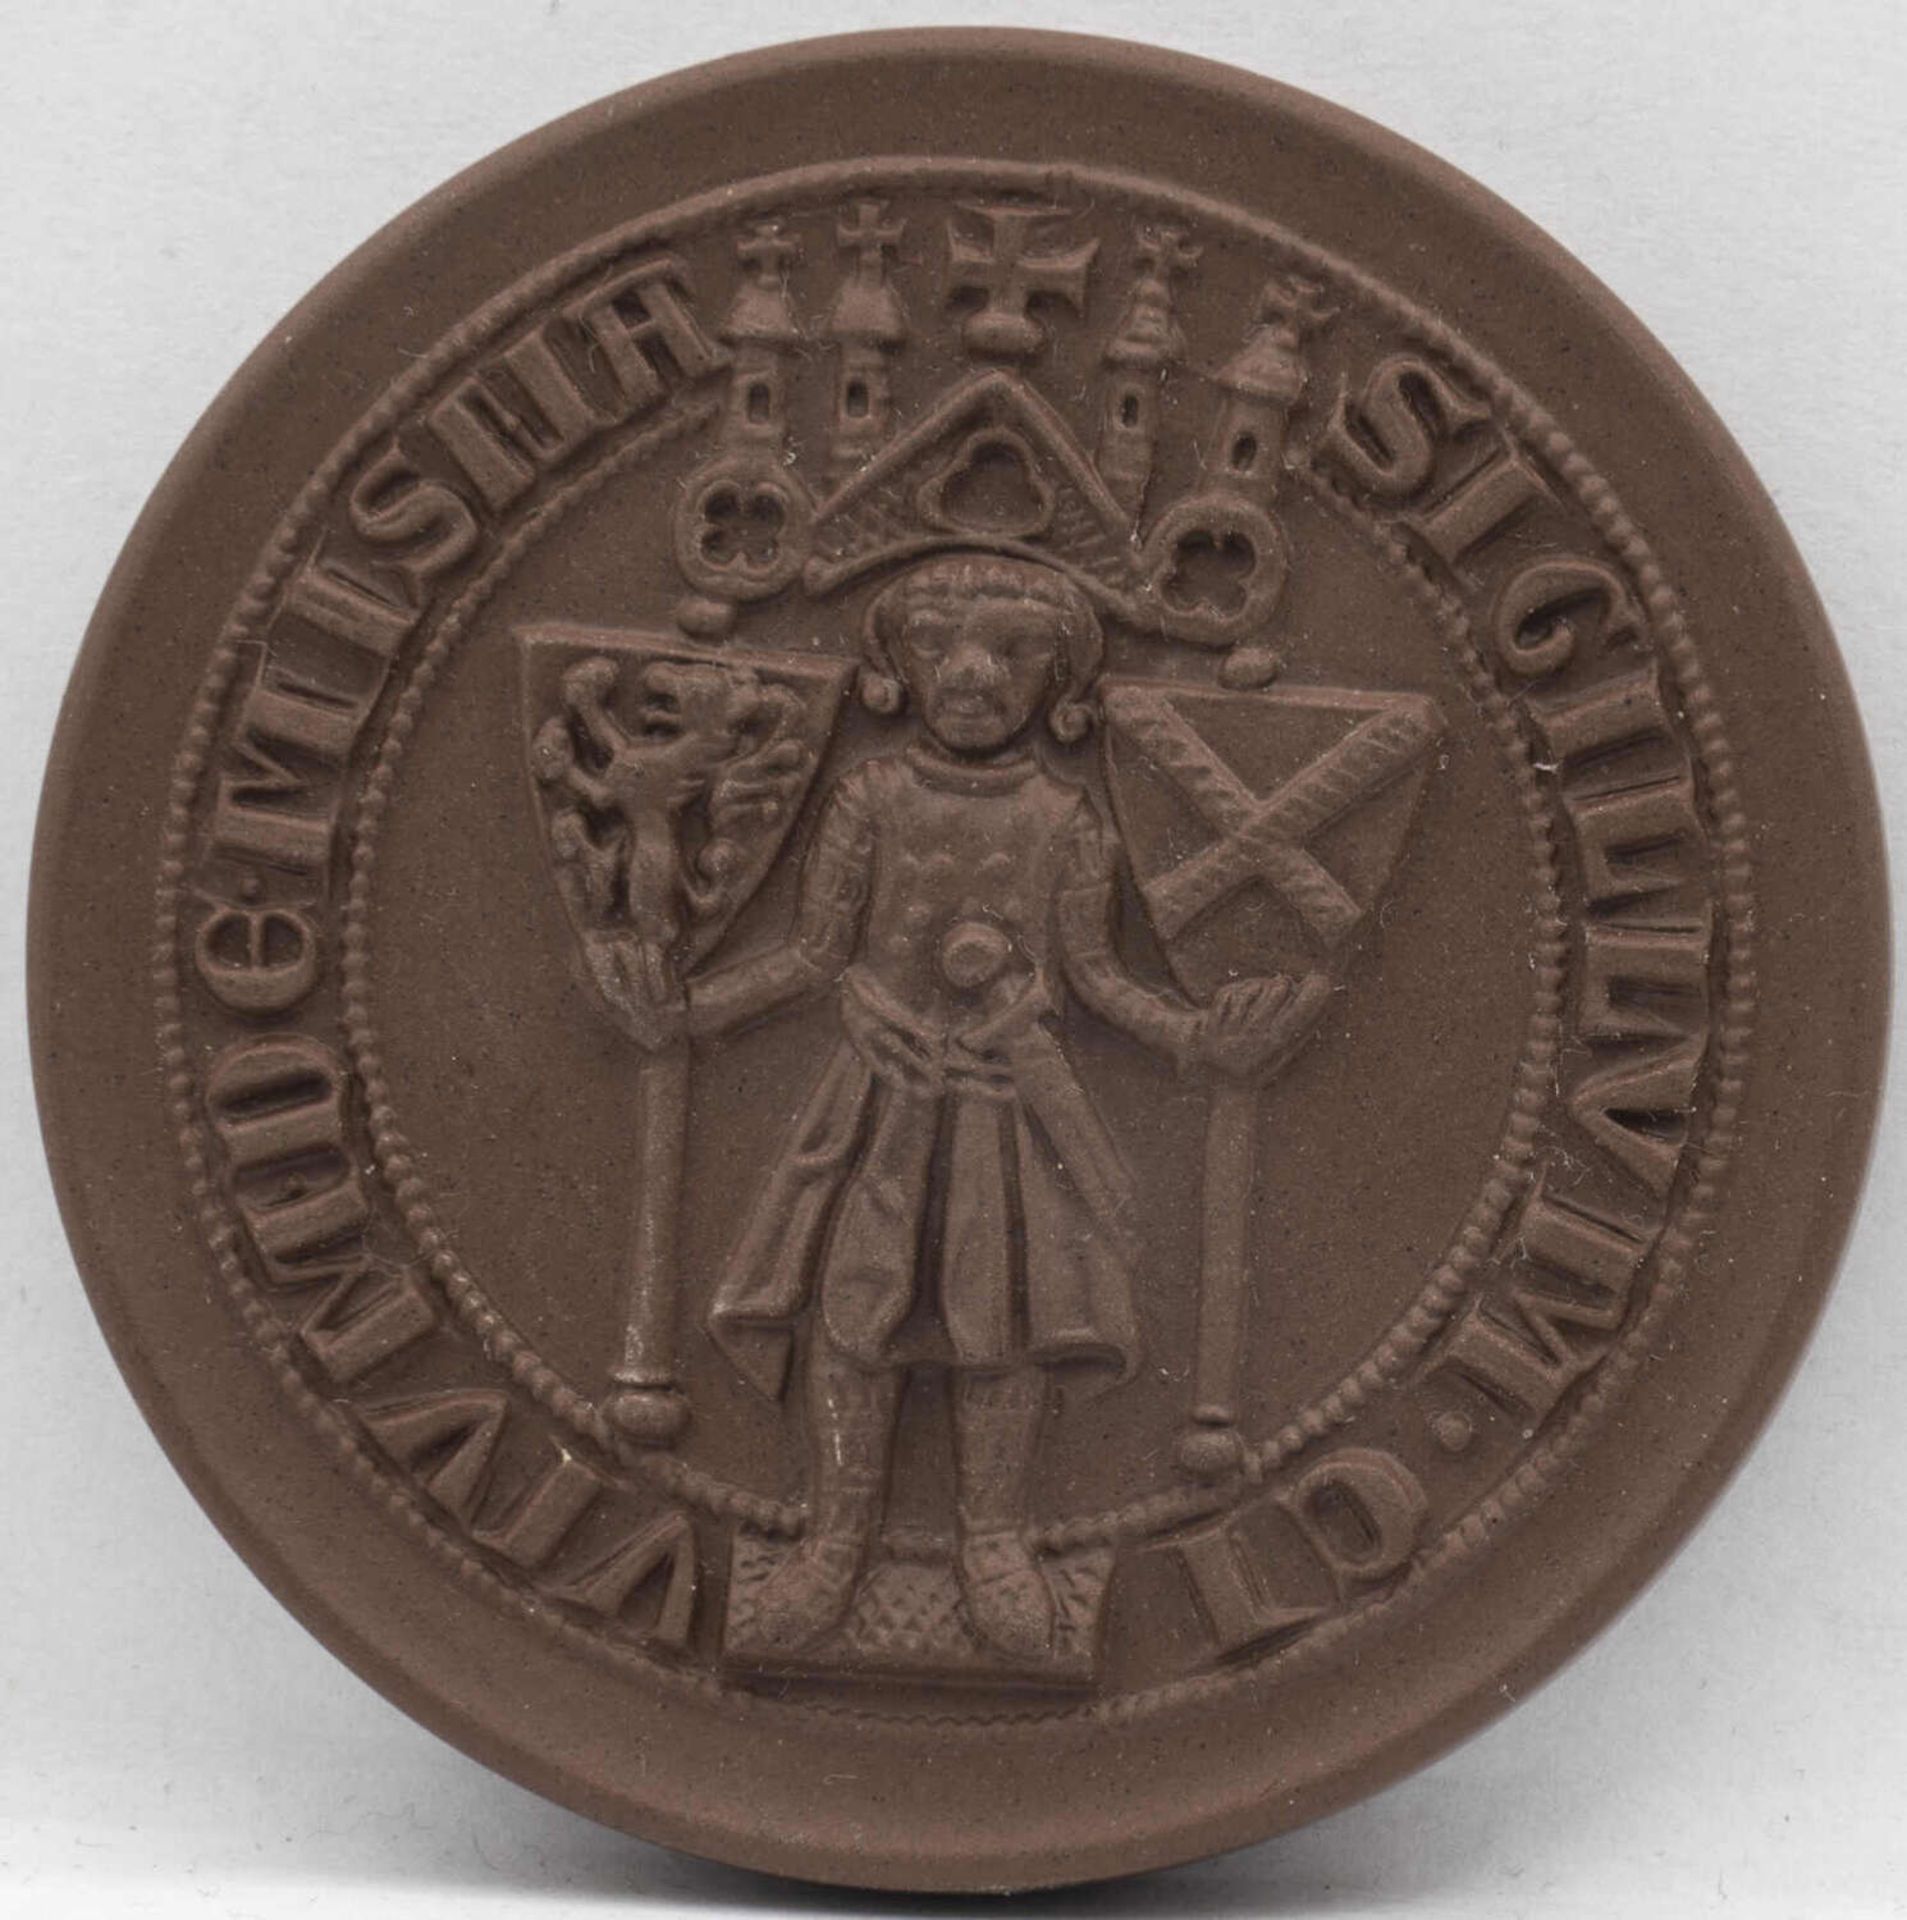 Meissen Porzellan - Medaille ältestes Siegel der Stadt Meissen. Durchmesser: ca. 64 mm. Erhaltung: